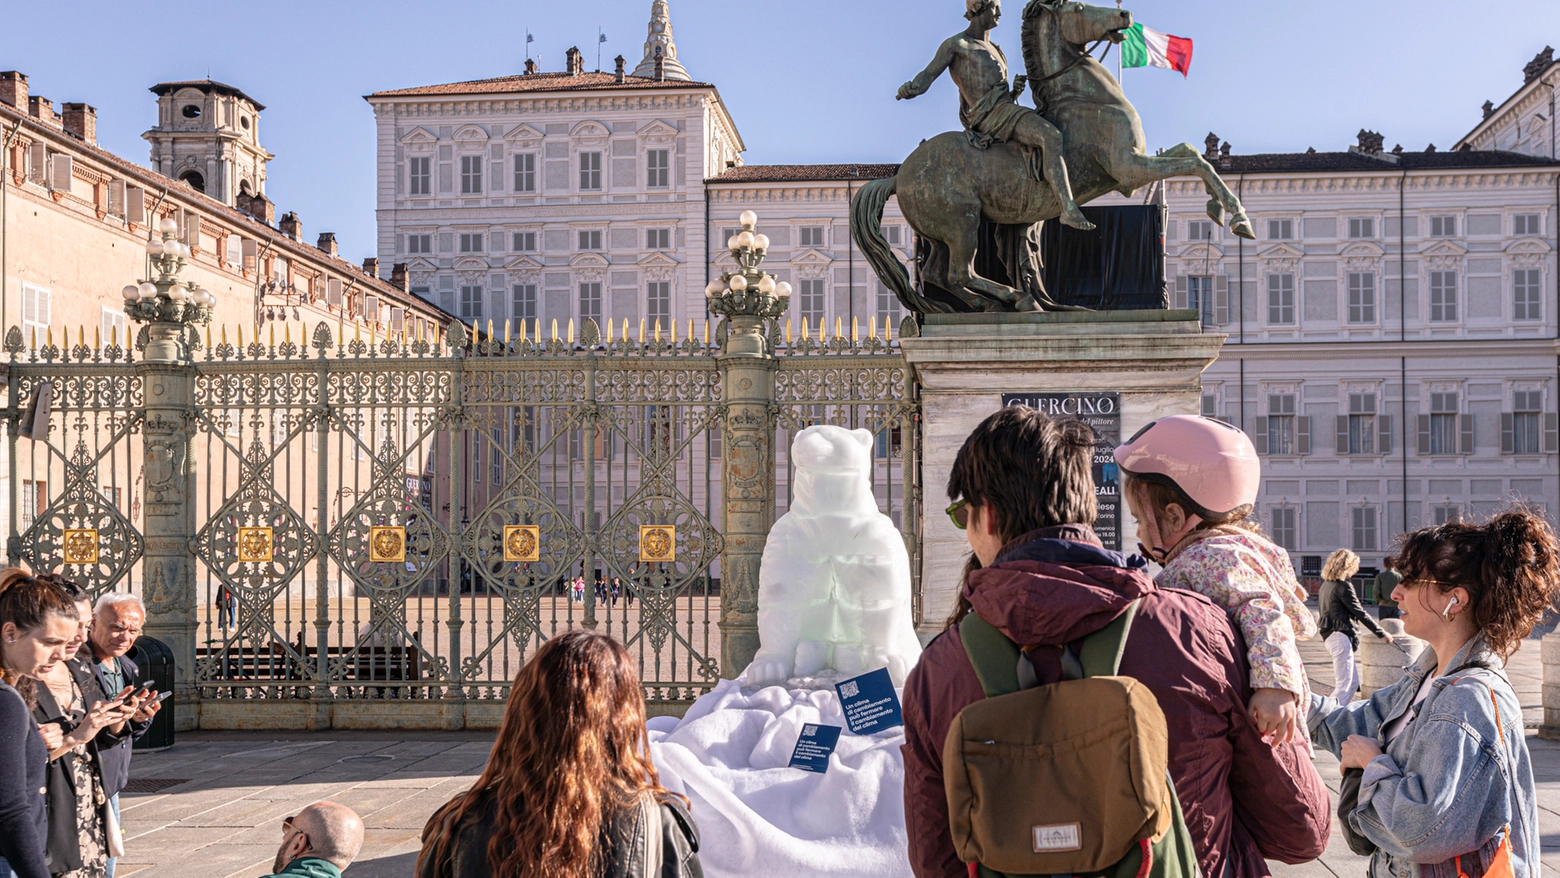 Già da martedì 16 aprile c'è un orso di ghiaccio che si scioglie in Piazza Castello, la mascotte della manifestazione denuncia i cambiamenti climatici